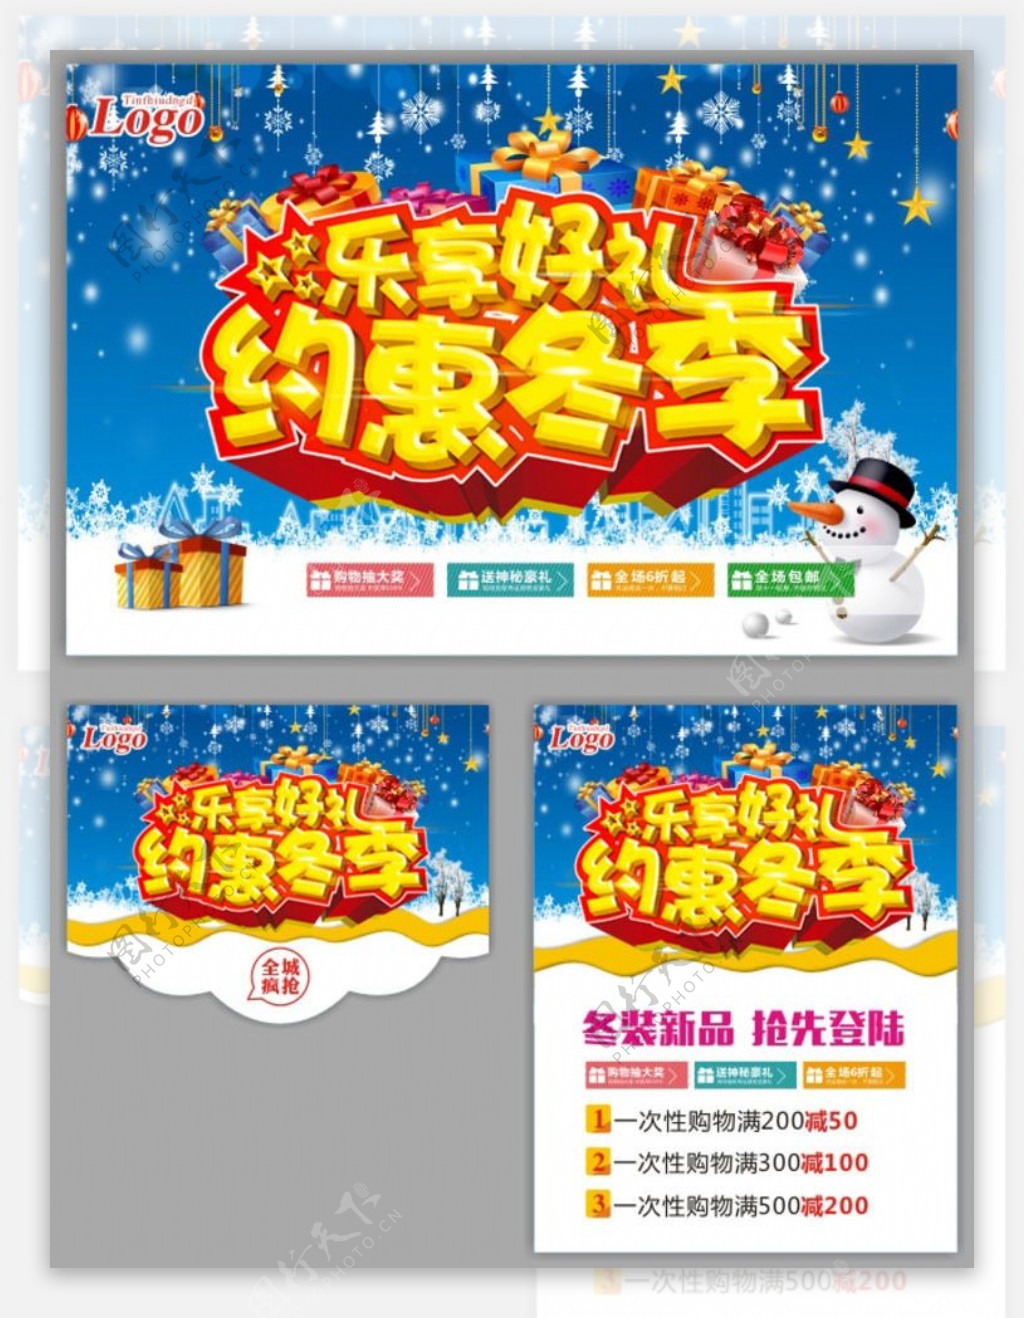 约惠冬季购物海报设计矢量素材